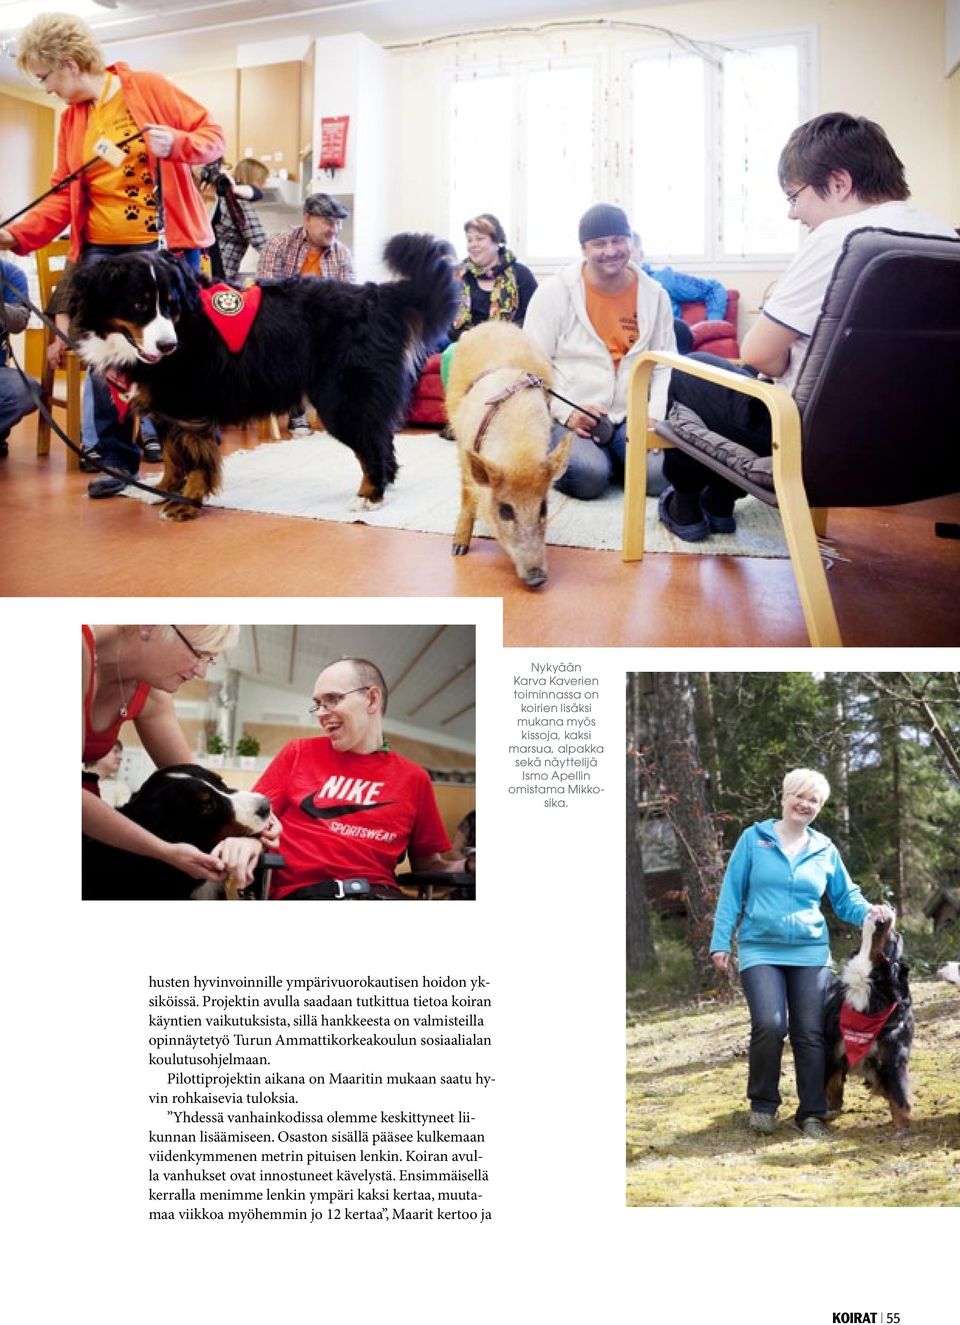 Projektin avulla saadaan tutkittua tietoa koiran käyntien vaikutuksista, sillä hankkeesta on valmisteilla opinnäytetyö Turun Ammattikorkeakoulun sosiaalialan koulutusohjelmaan.